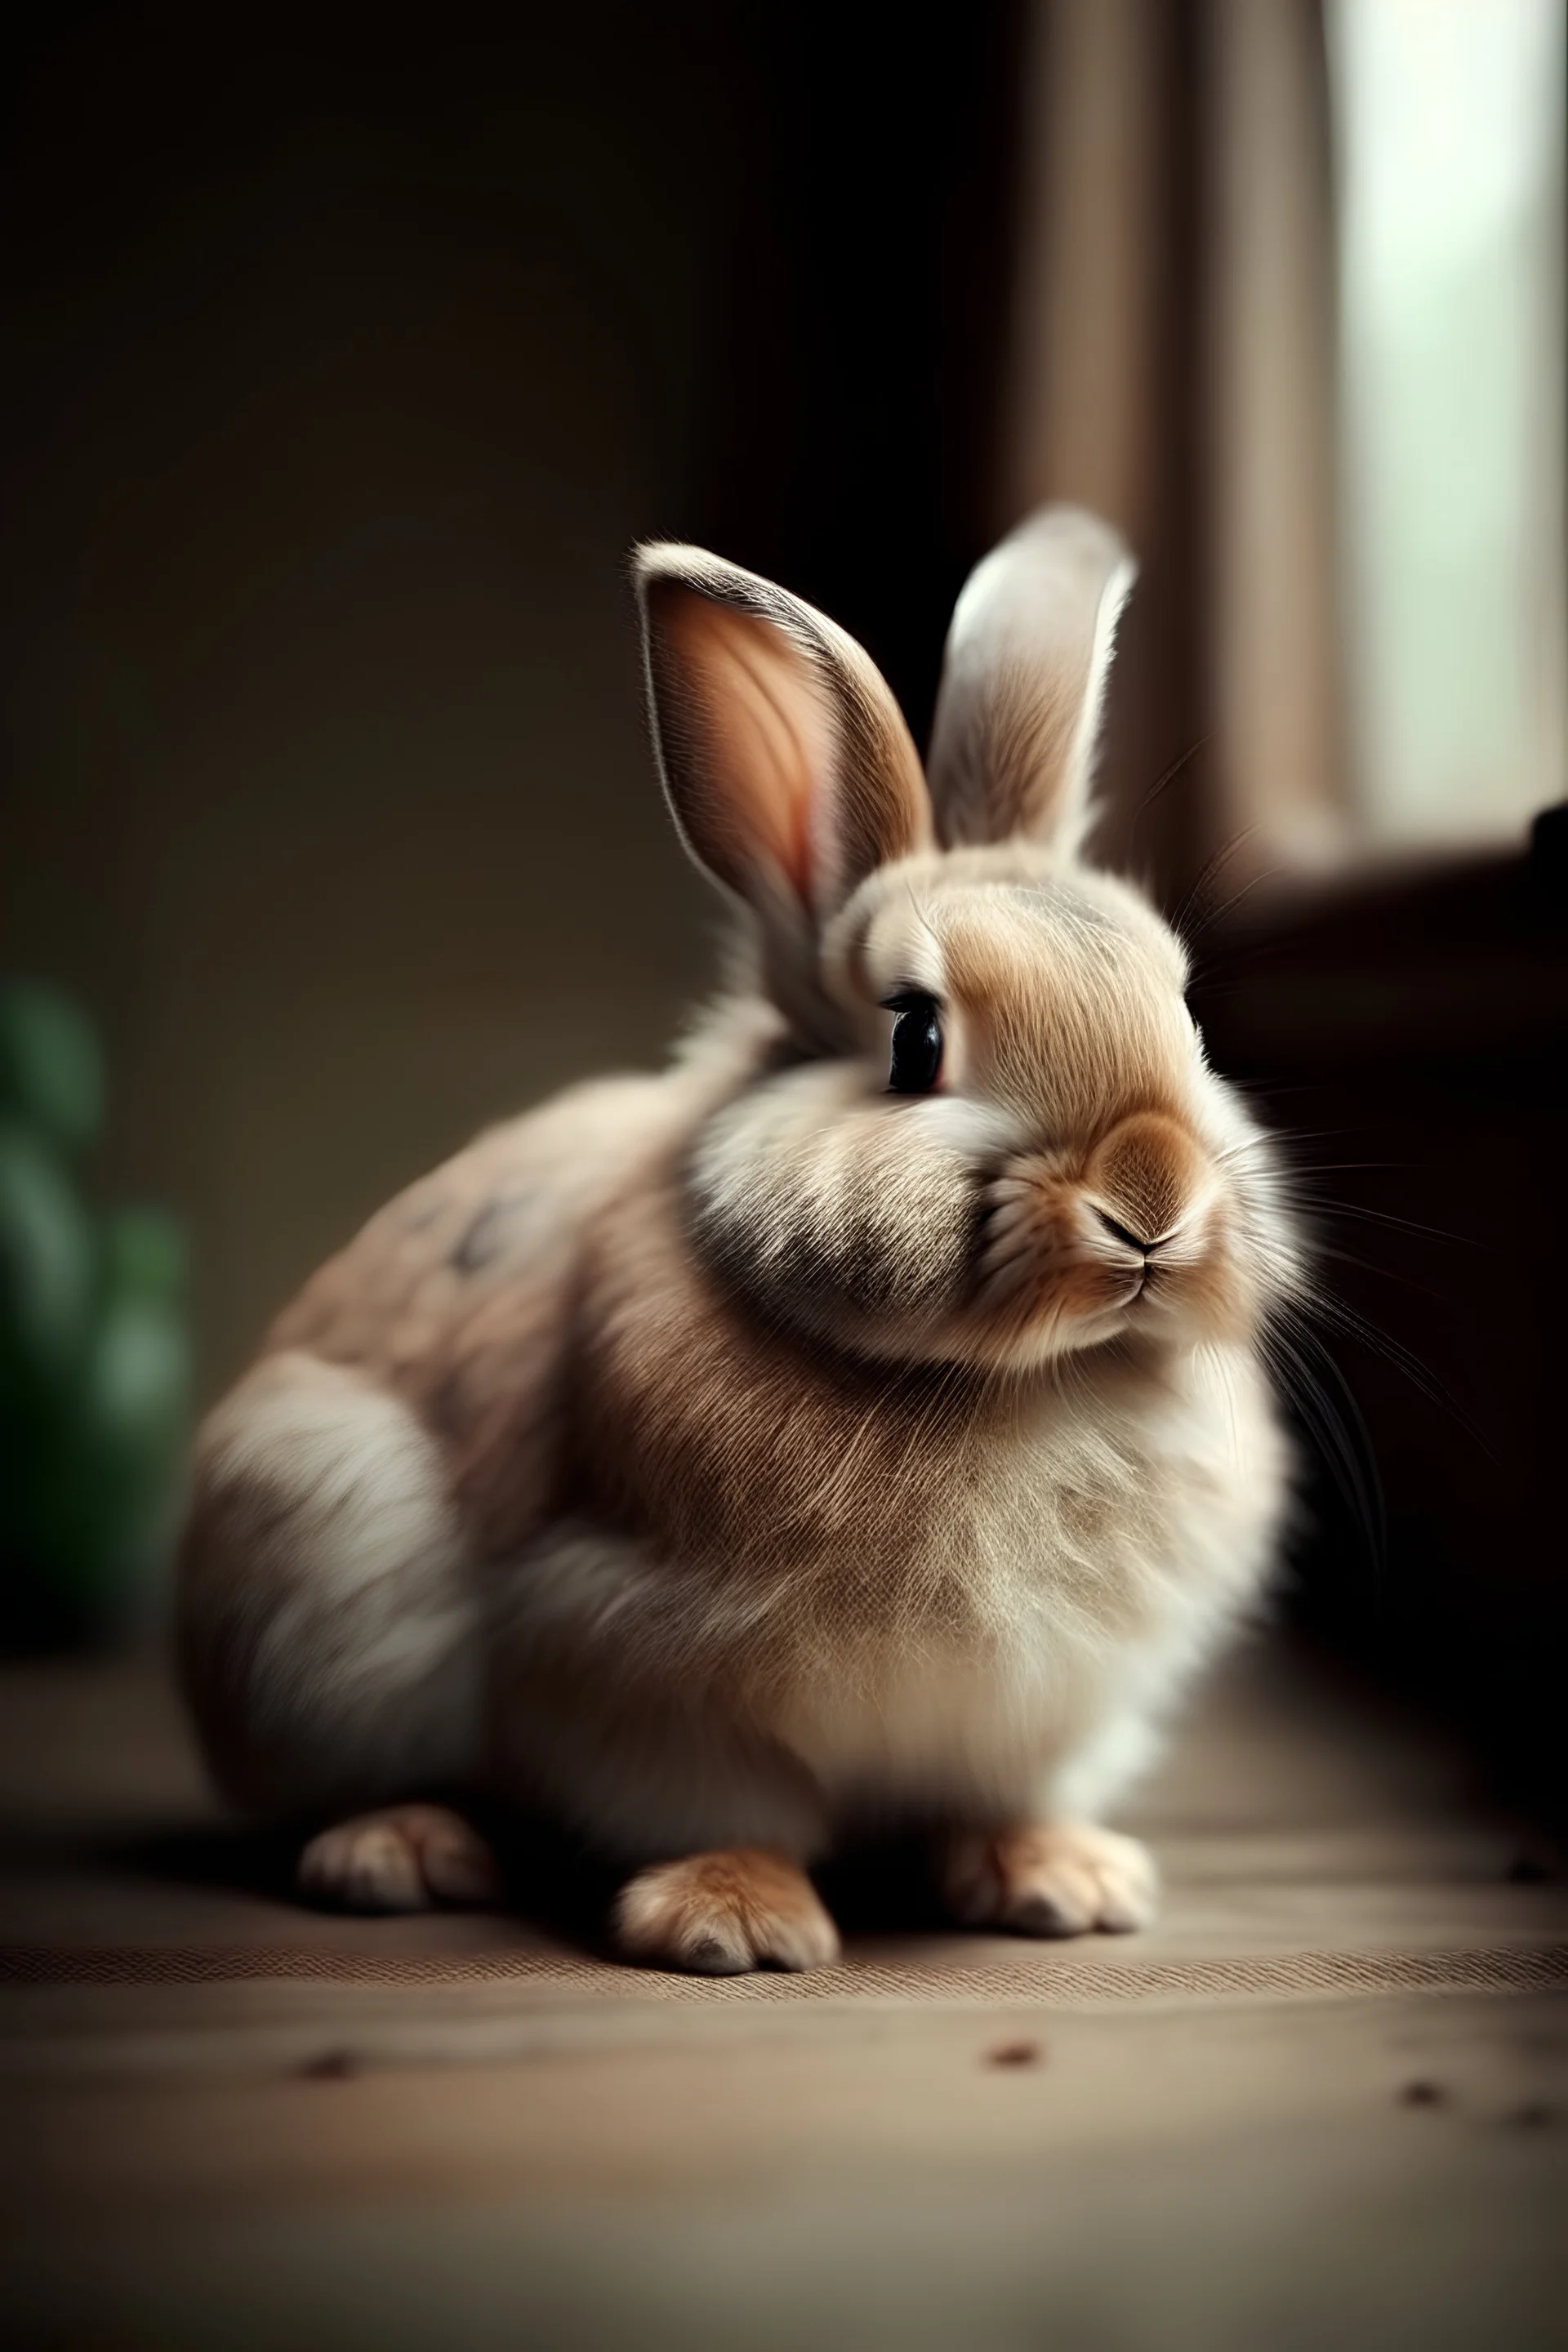 A bunny